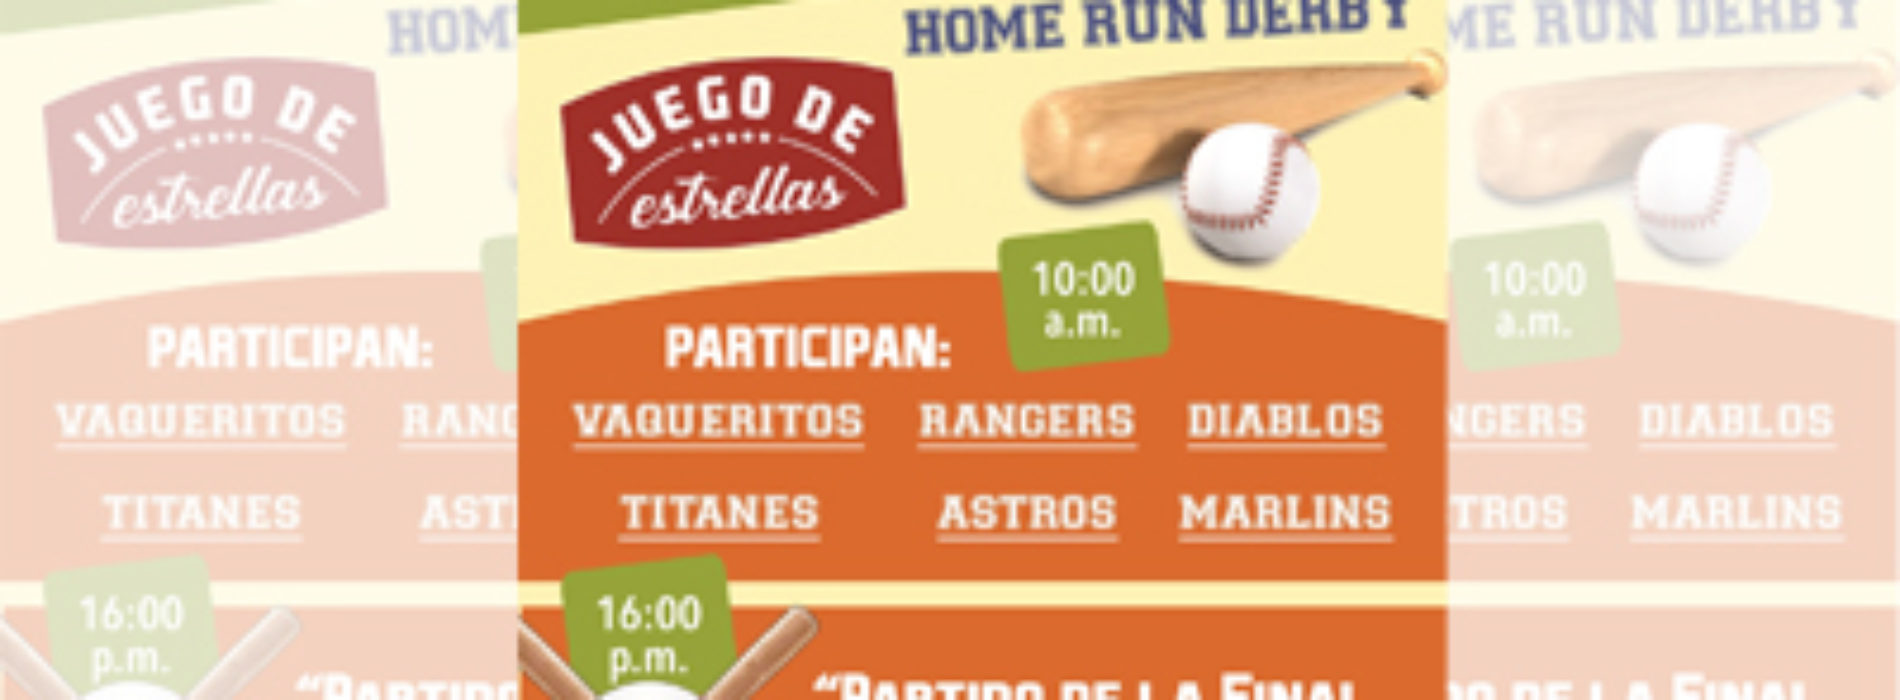 Realizarán Primer Juego de Estrellas en el  Parque de Beisbol Infantil “Vinicio Castilla Soria”